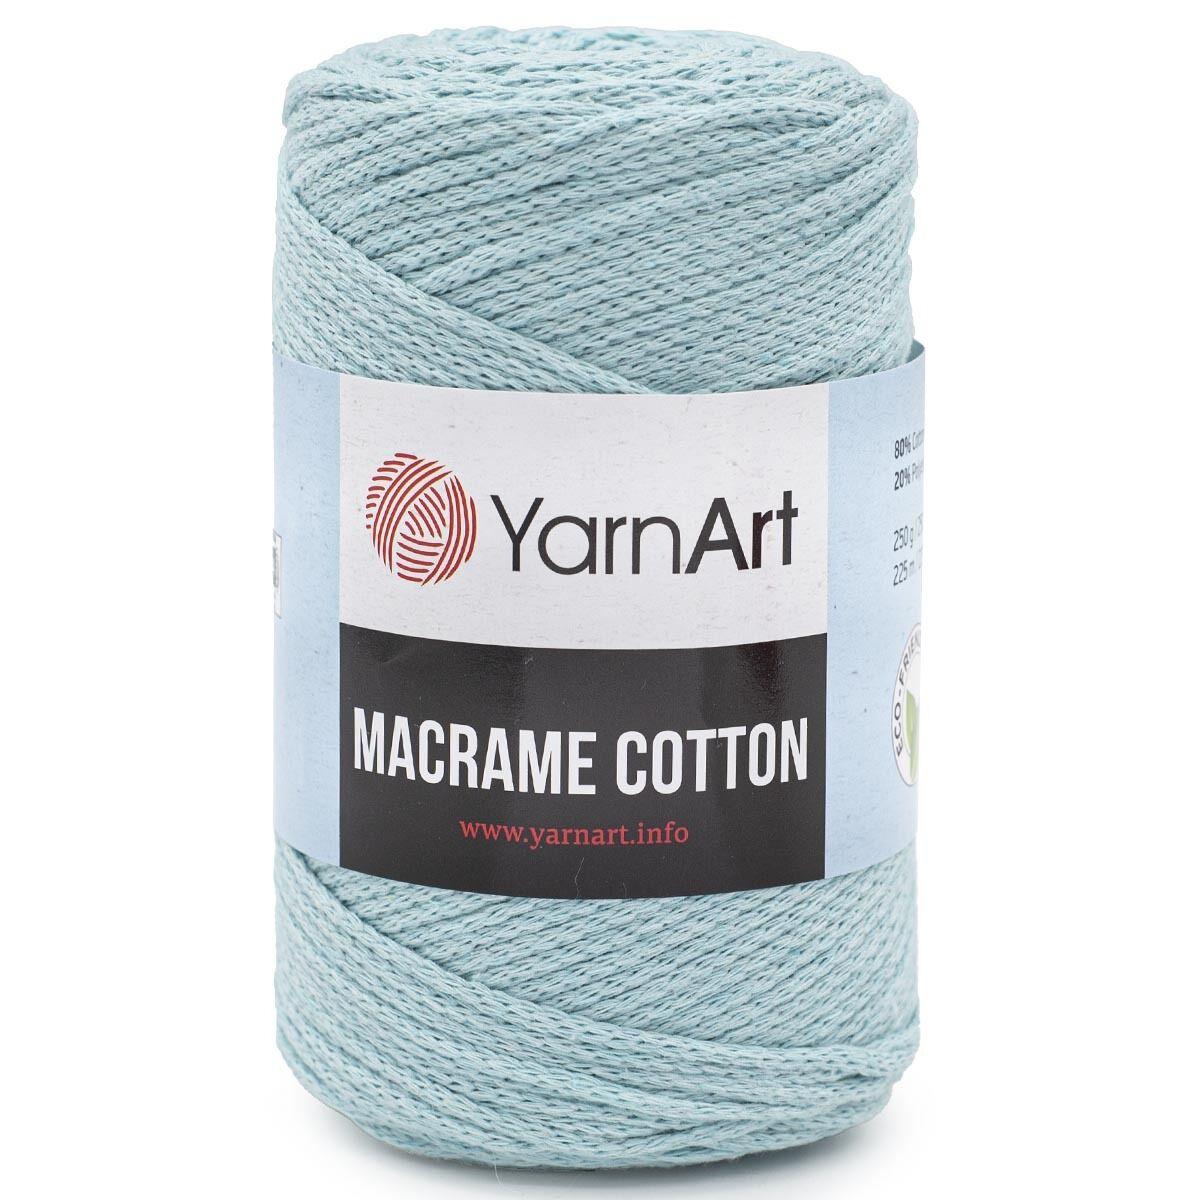 Хлопковый шнур Ярнарт Макраме Коттон (Yarnart Macrame Cotton) цвет 775 мятный